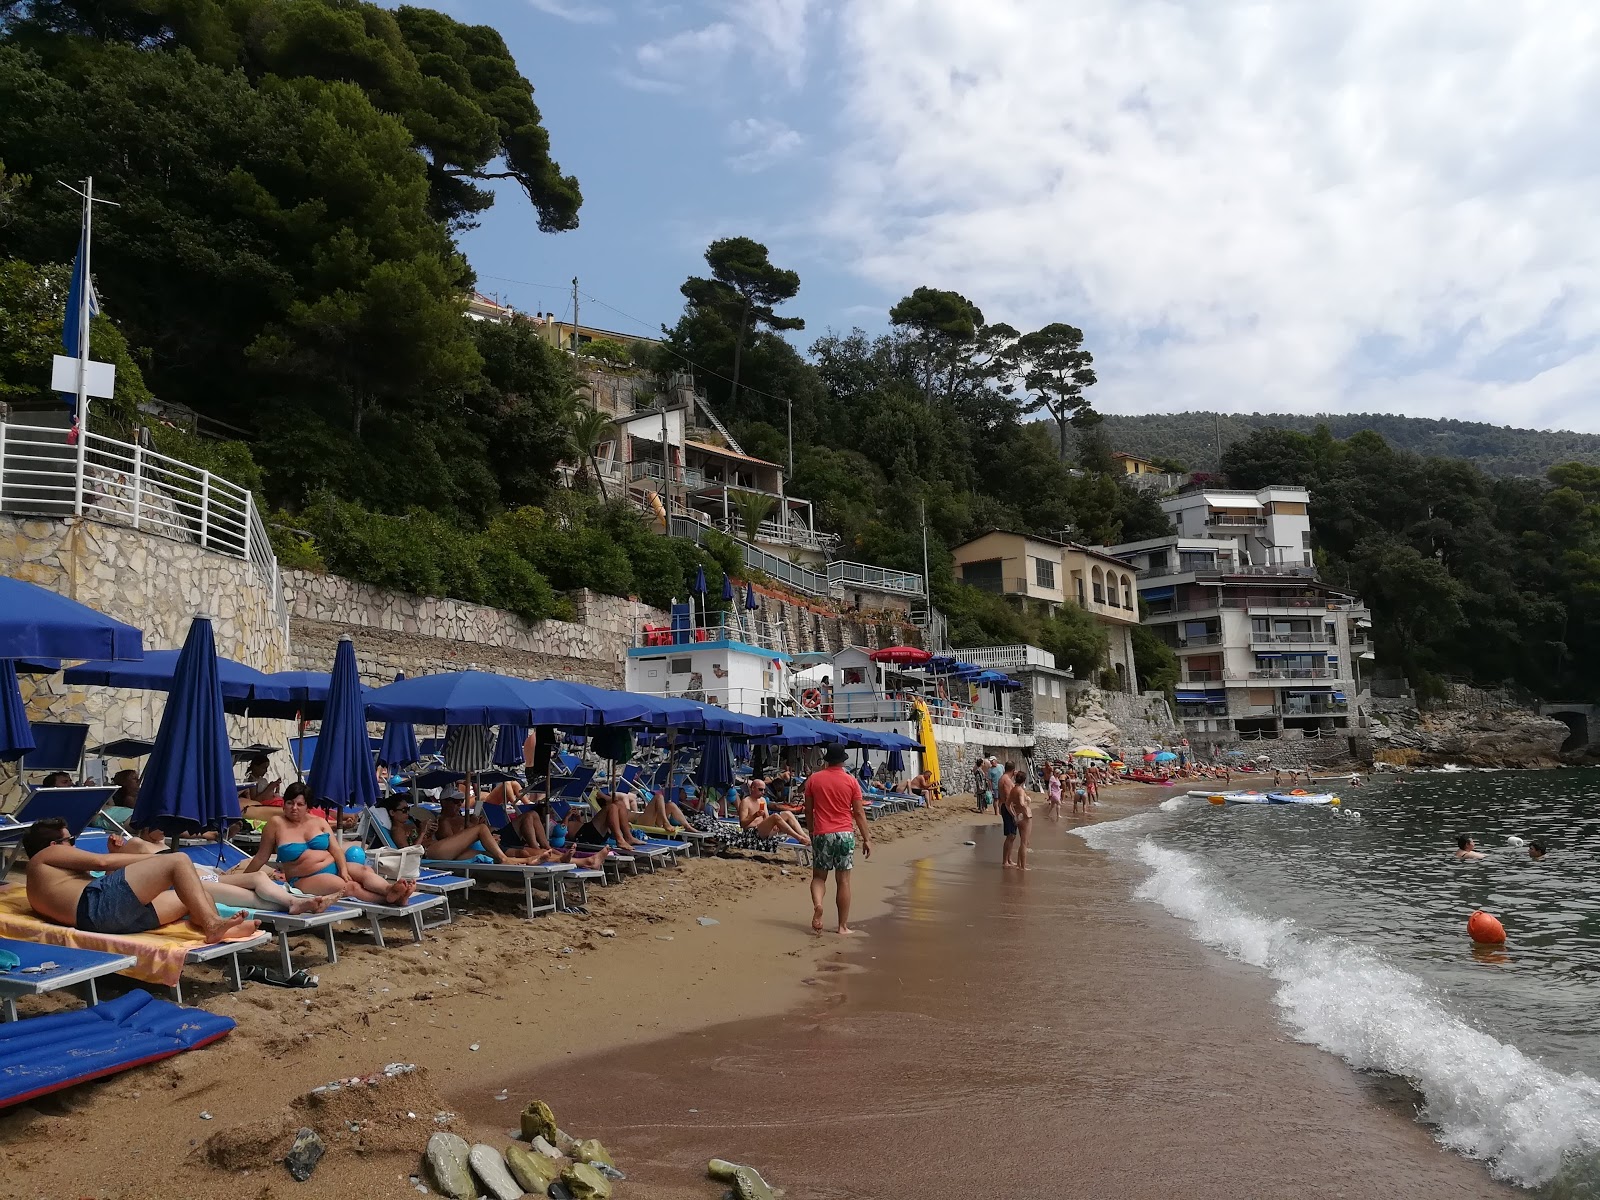 Zdjęcie Spiaggia Fiascherino obszar udogodnień